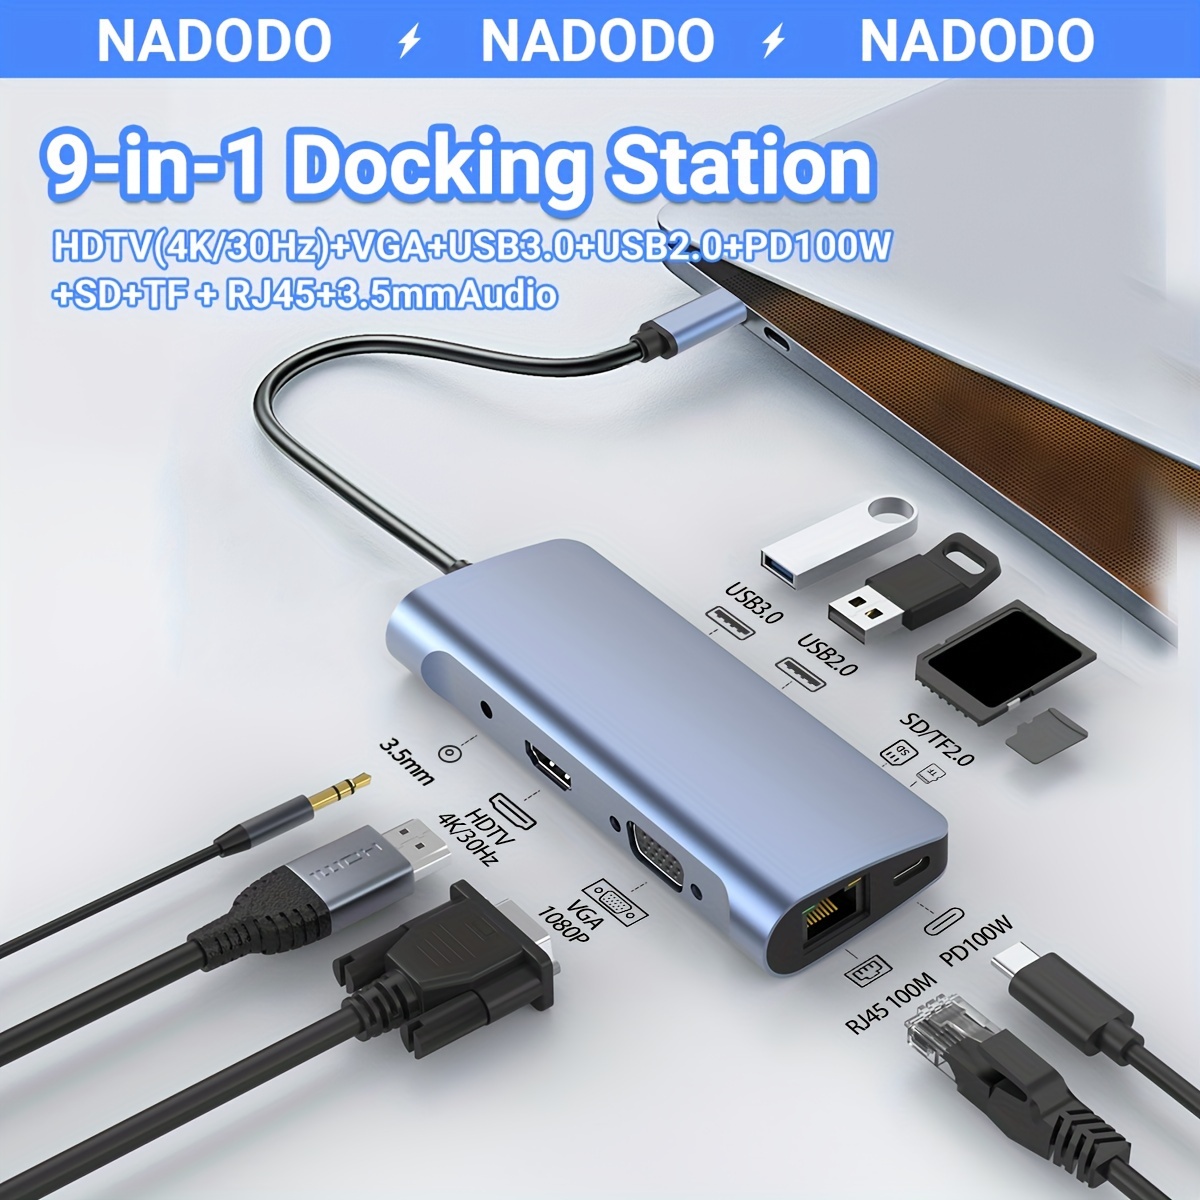 Adaptateur USB pour MacBook Air/Pro, MacBook Air M1 Accessoires USB 5 en 1  USB-C vers USB avec 4 USB 3.0 et Thunderbolt 3 100 W PD, compatible avec